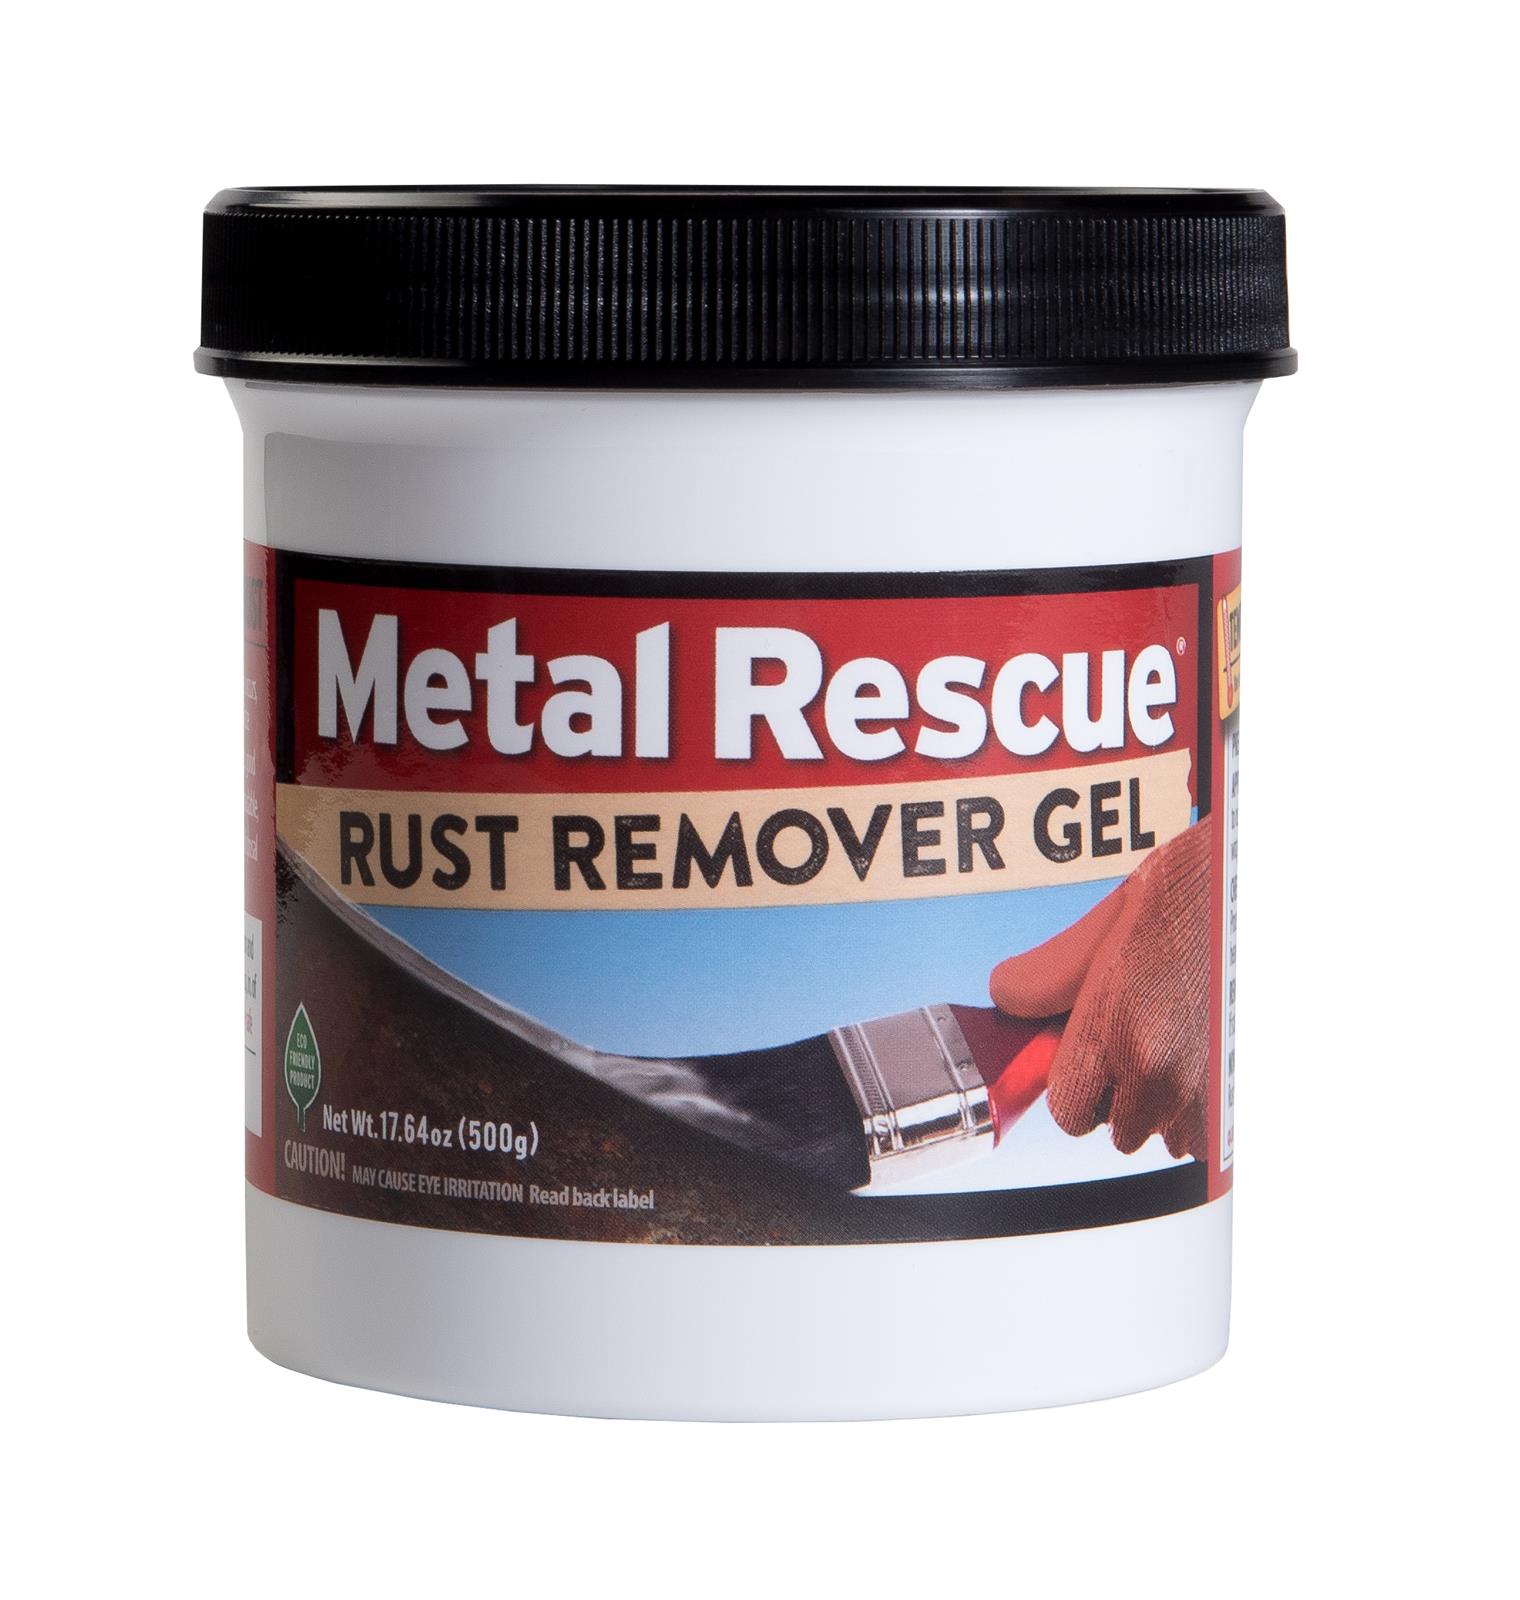 Evapo-Rust Rust Remover ER088